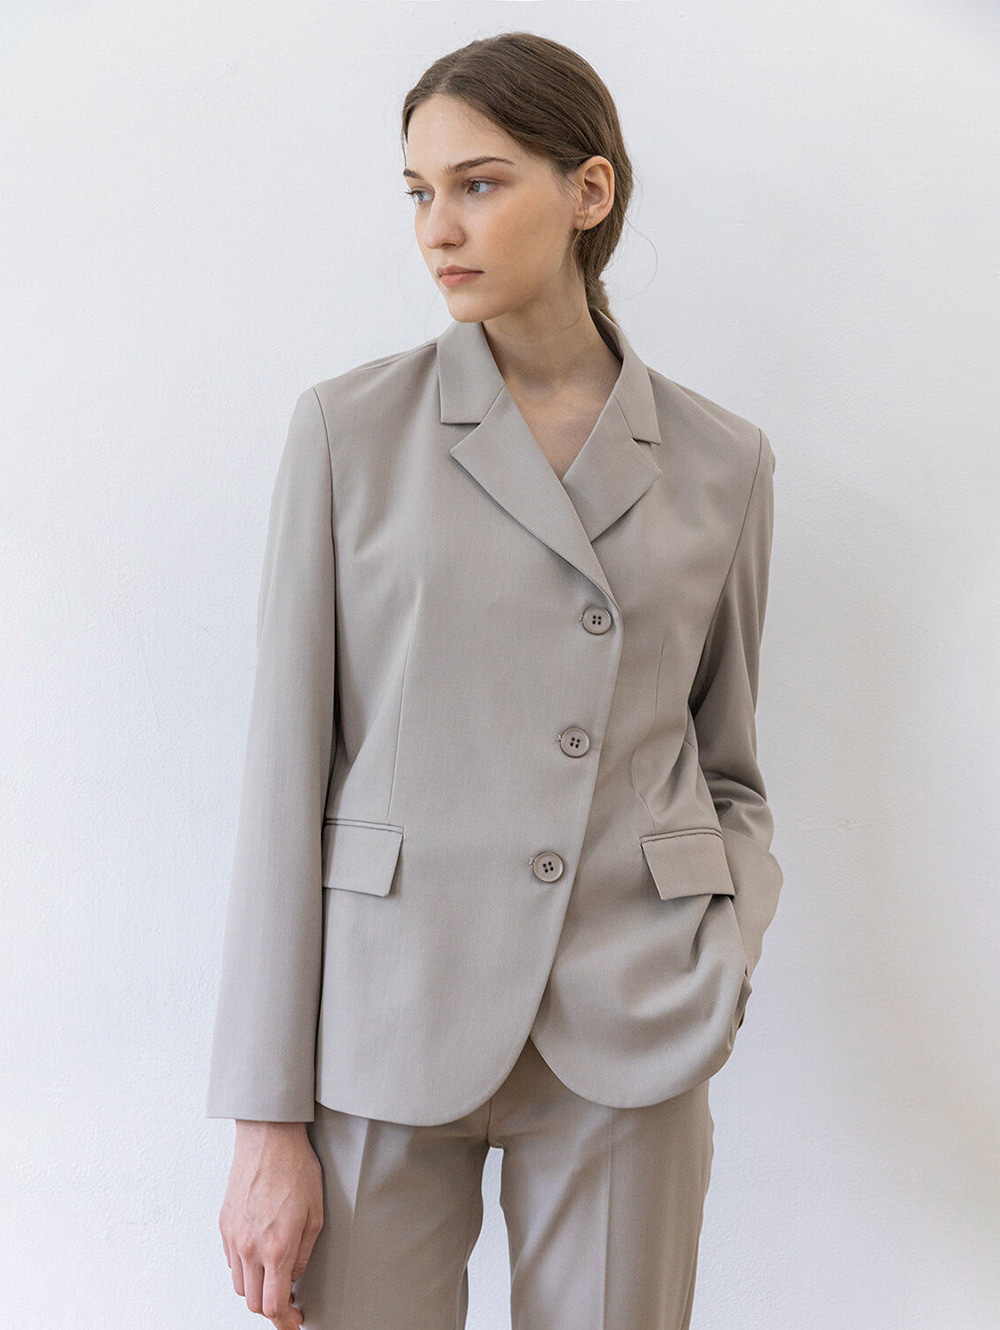 Oblique line jacket (cozy gray)